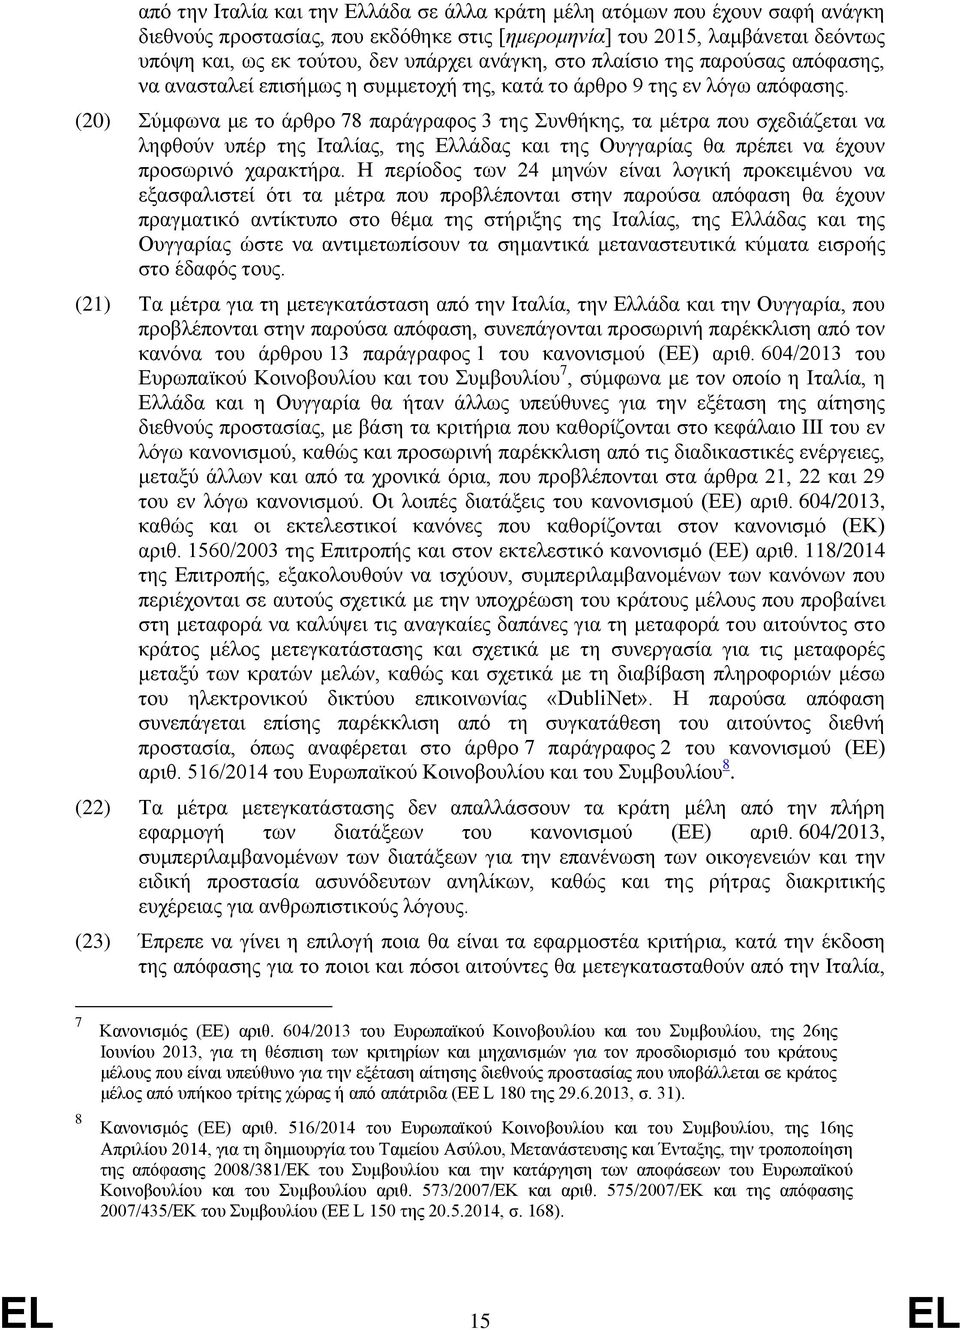 (20) Σύμφωνα με το άρθρο 78 παράγραφος 3 της Συνθήκης, τα μέτρα που σχεδιάζεται να ληφθούν υπέρ της Ιταλίας, της Ελλάδας και της Ουγγαρίας θα πρέπει να έχουν προσωρινό χαρακτήρα.